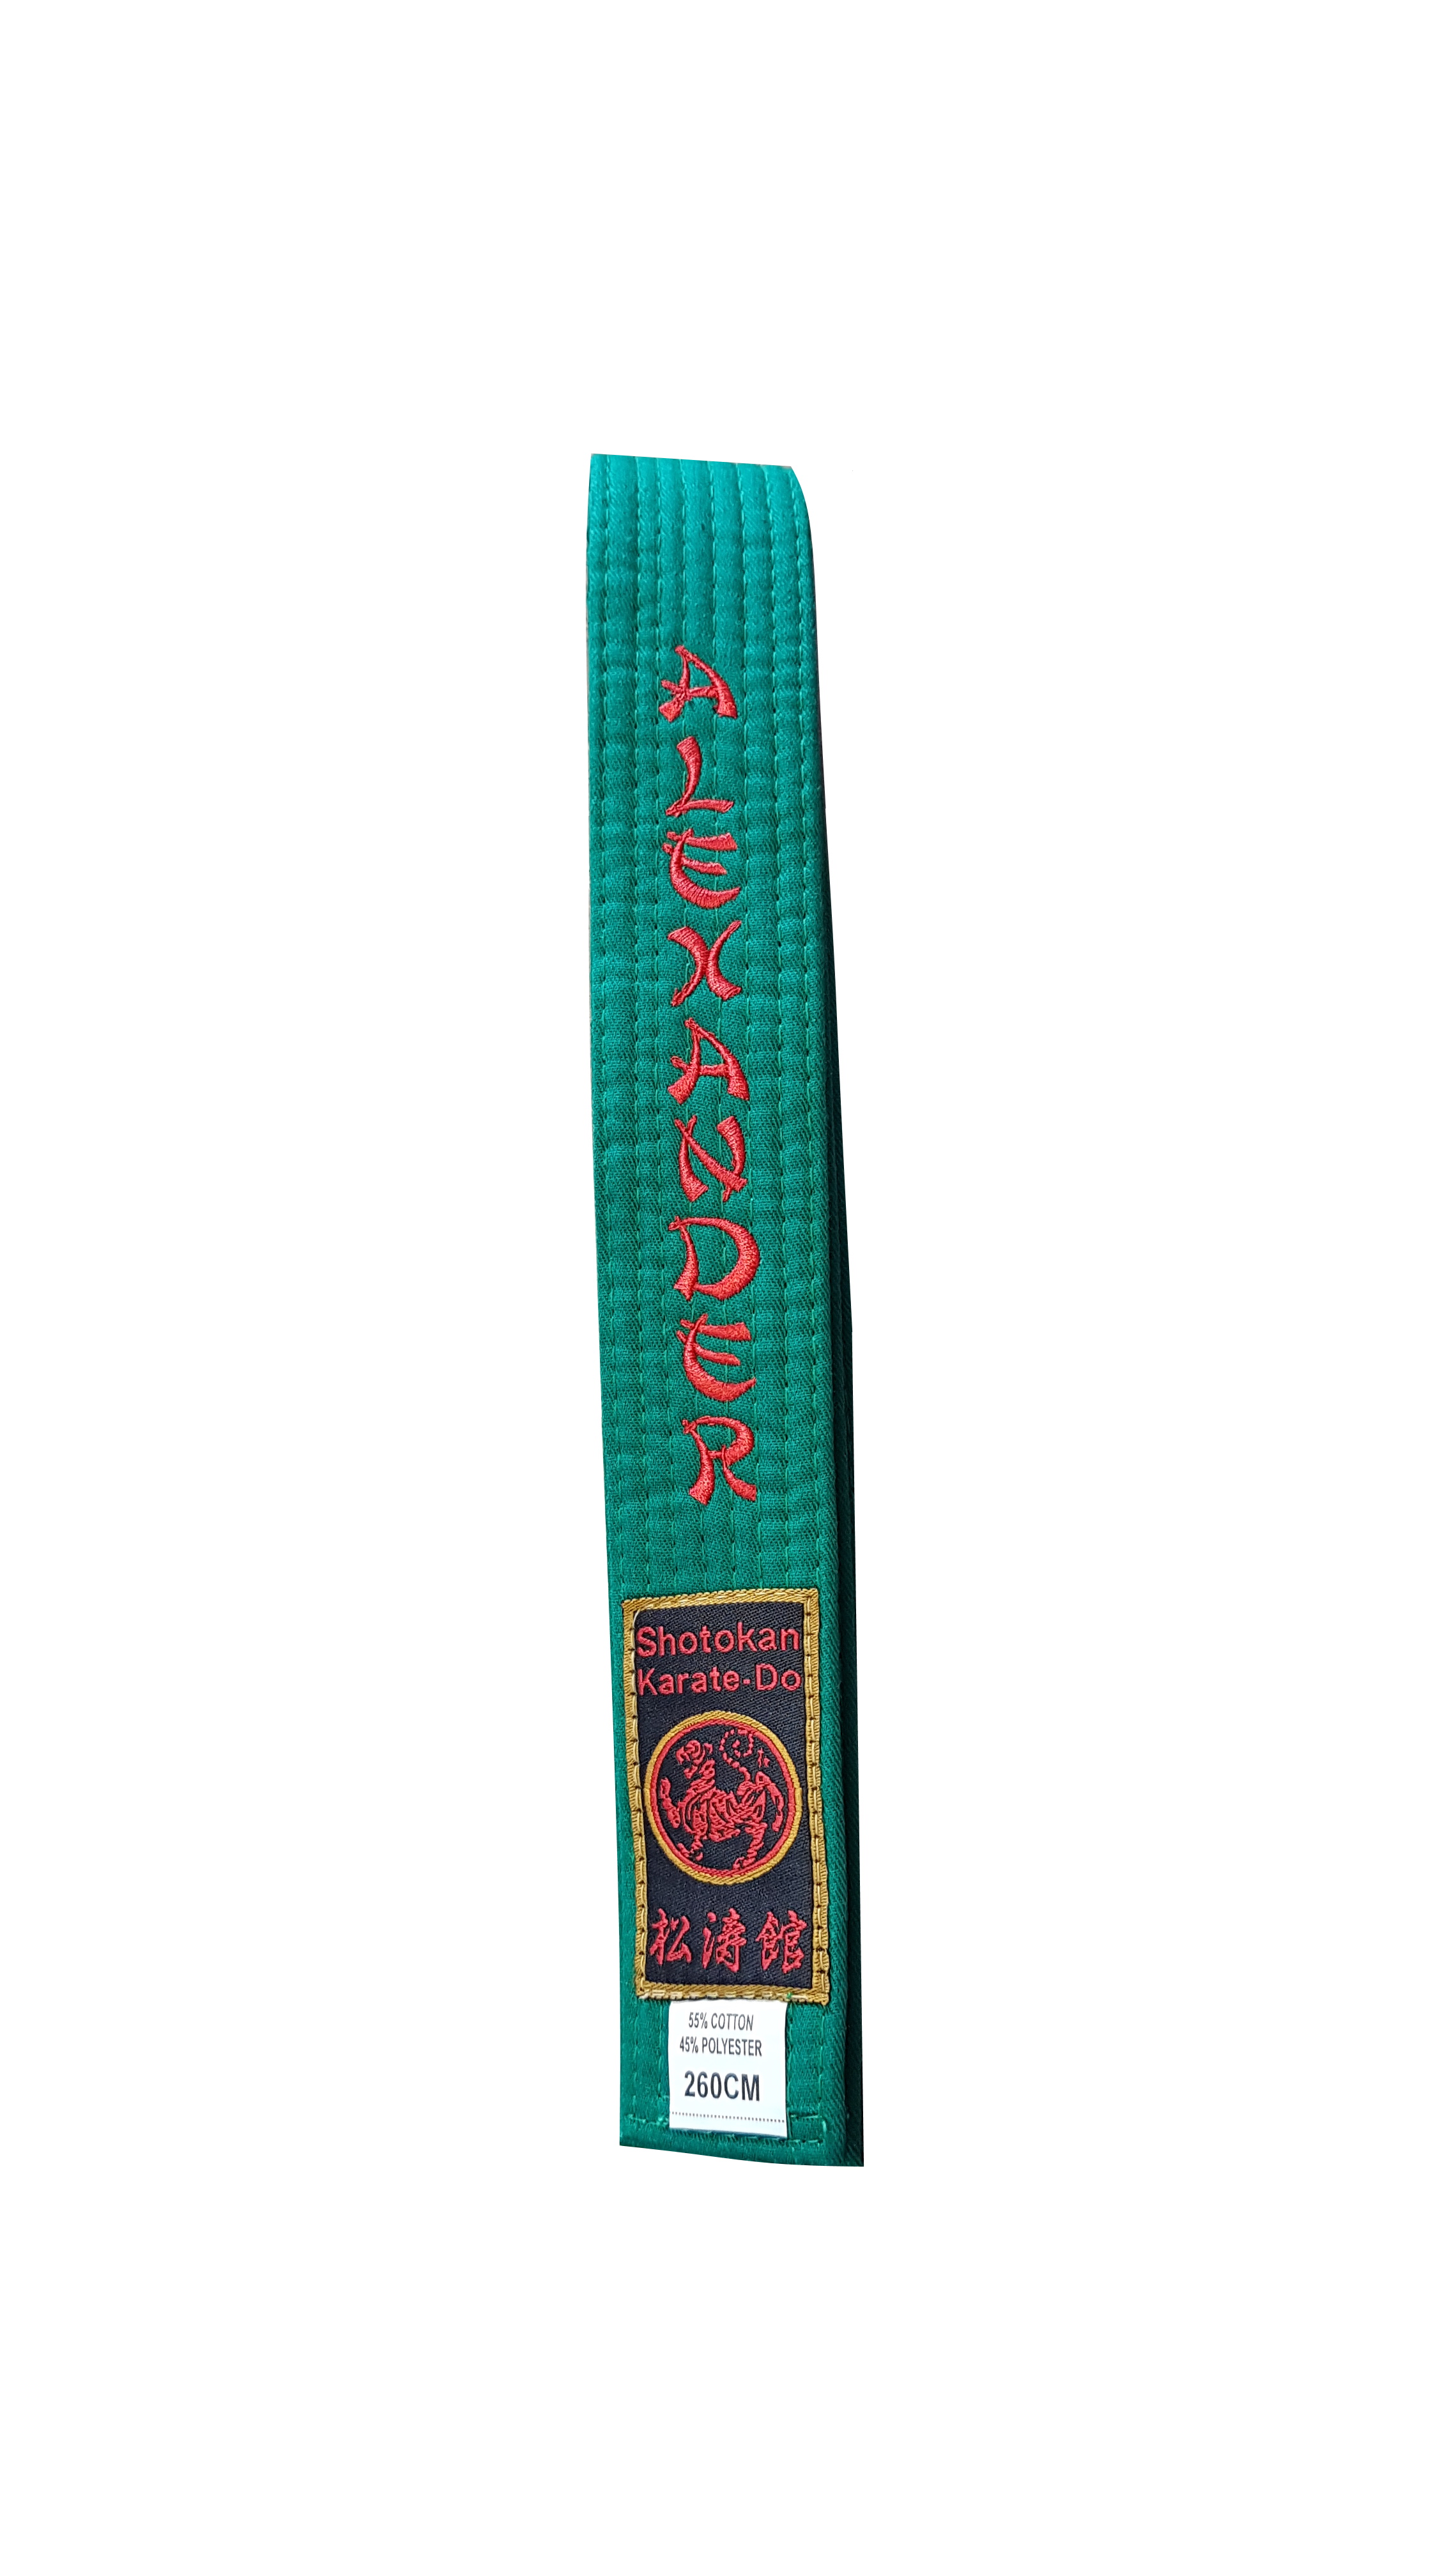 Karategürtel grün Shotokan Sonderedition bestickt mit "Alexander" 260 cm (%SALE)